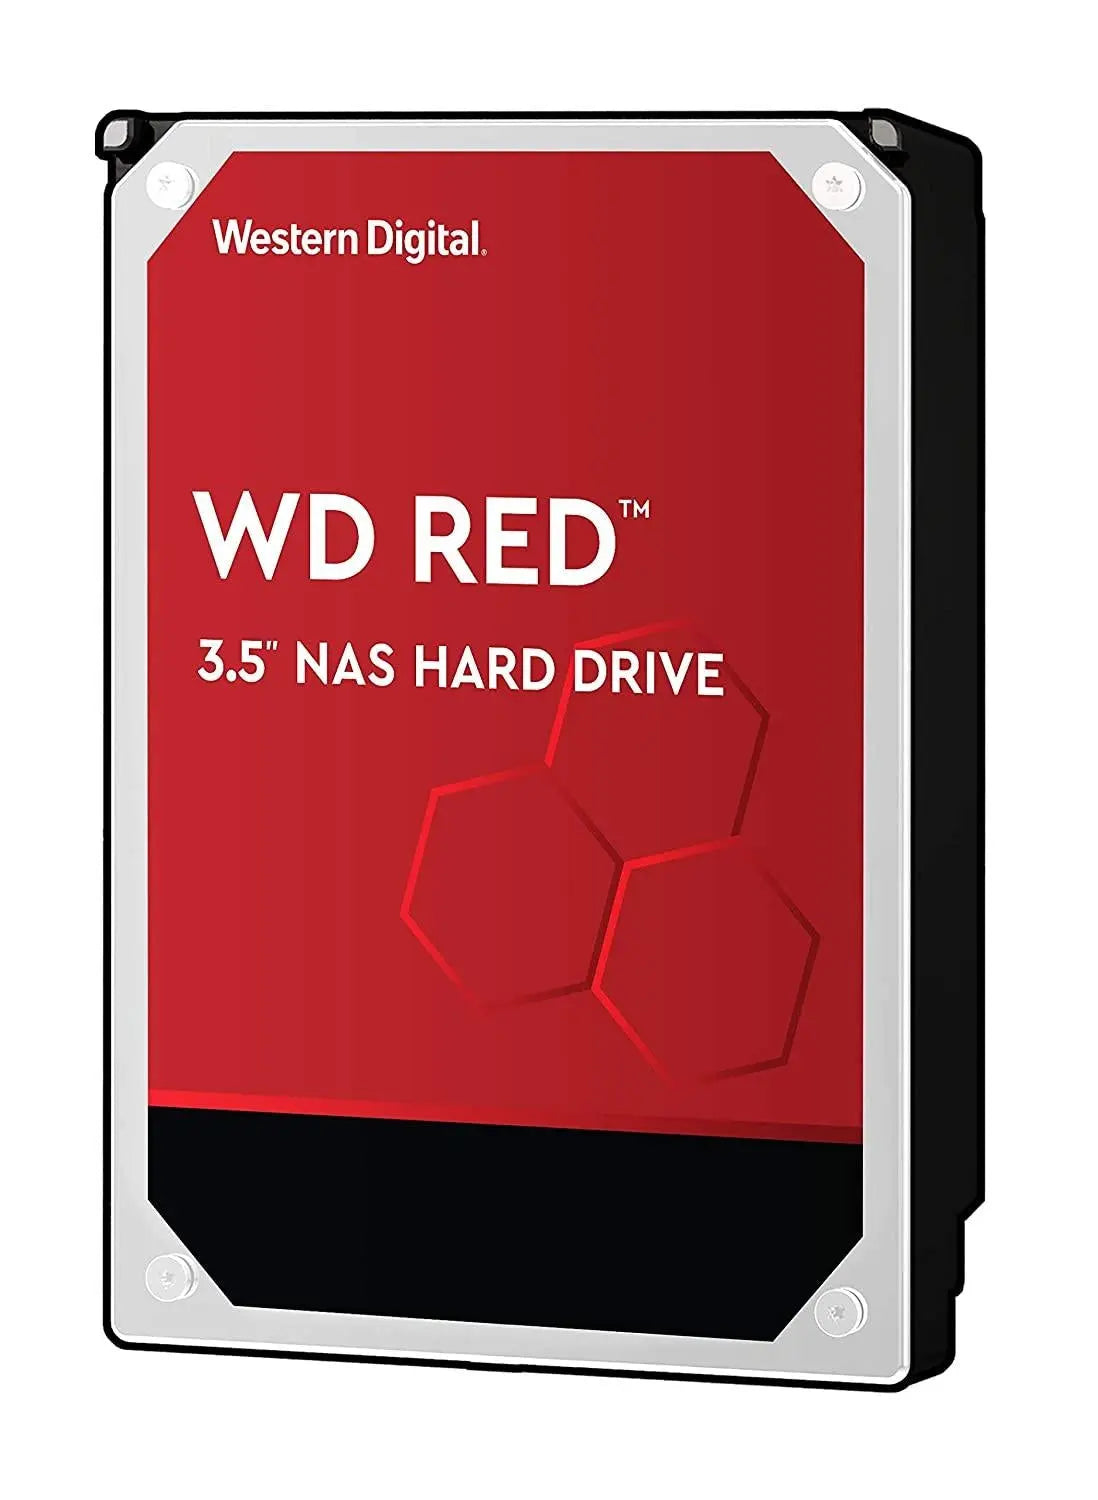 WESTERN DIGITAL Digital WD Red Plus 1TB 3.5' NAS HDD SATA3 5400RPM 64MB Cache CMR 24x7 NASware 3.0 Tech 3yrs wty WESTERN DIGITAL